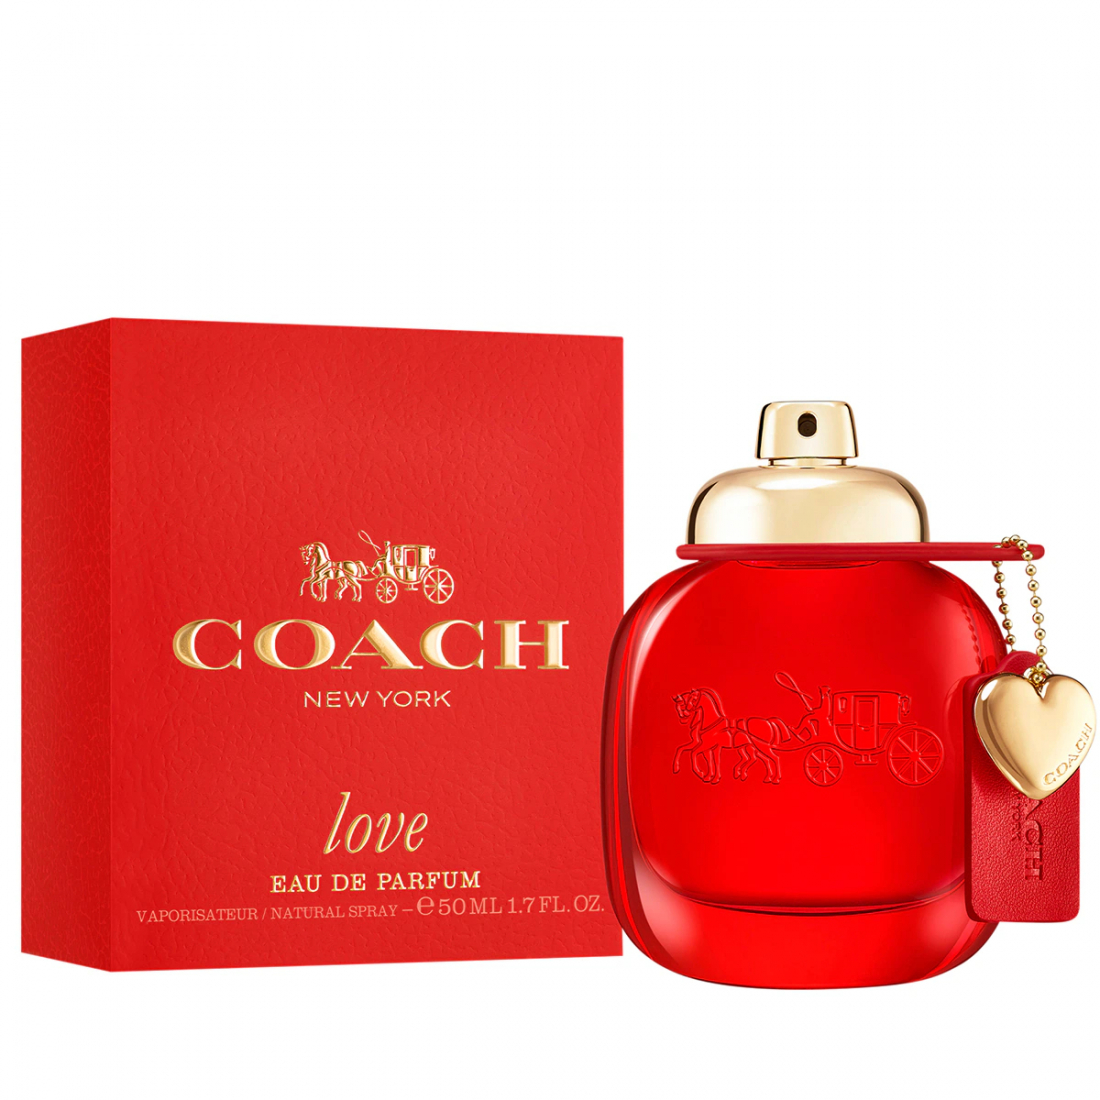 'Love' Eau de parfum - 50 ml